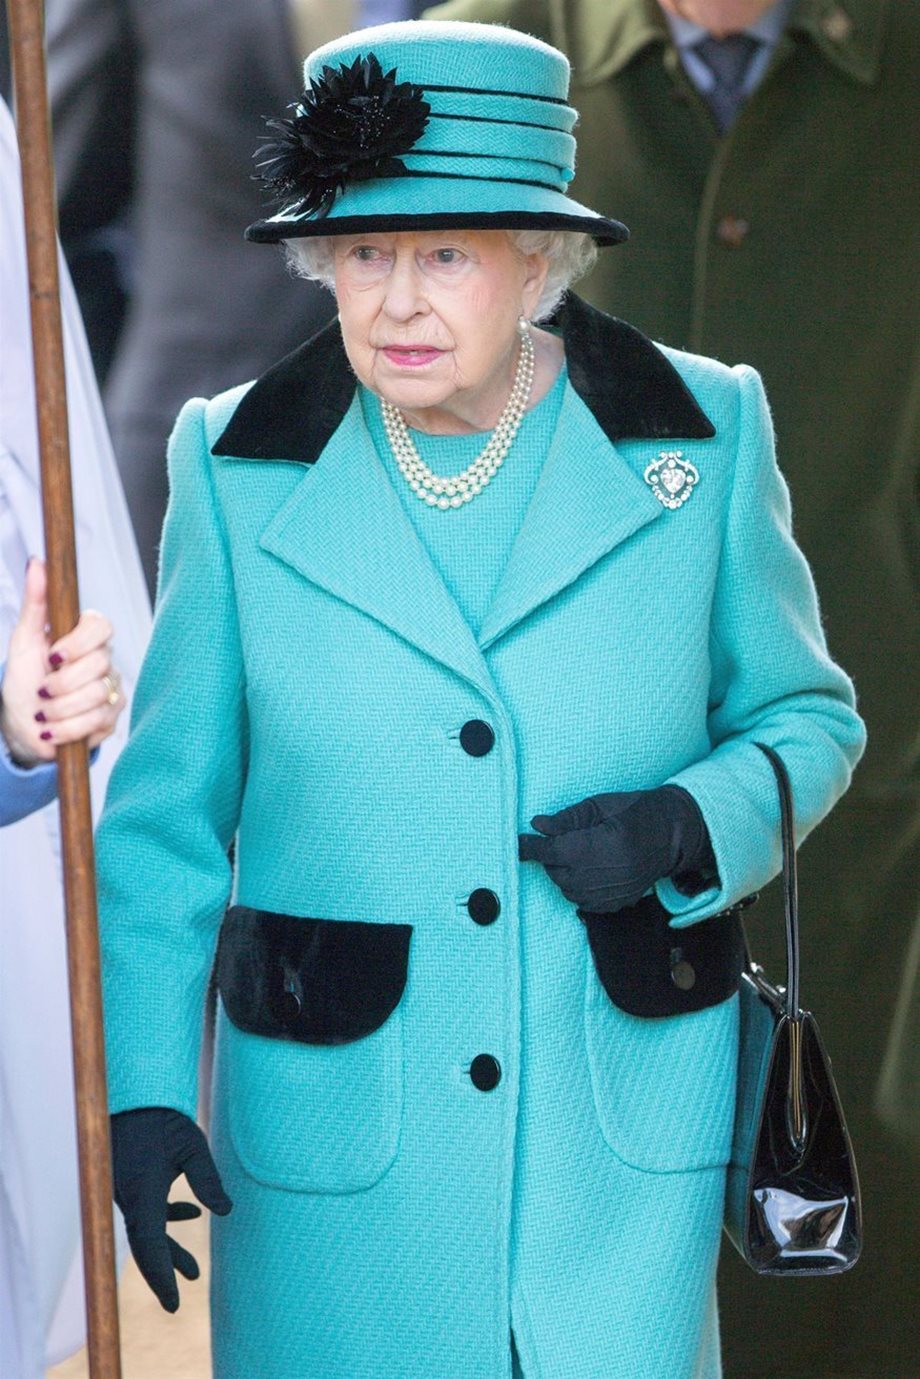 Κορονοϊός: Η βασίλισσα εγκατέλειψε το παλάτι - Σχέδιο να μπει σε καραντίνα